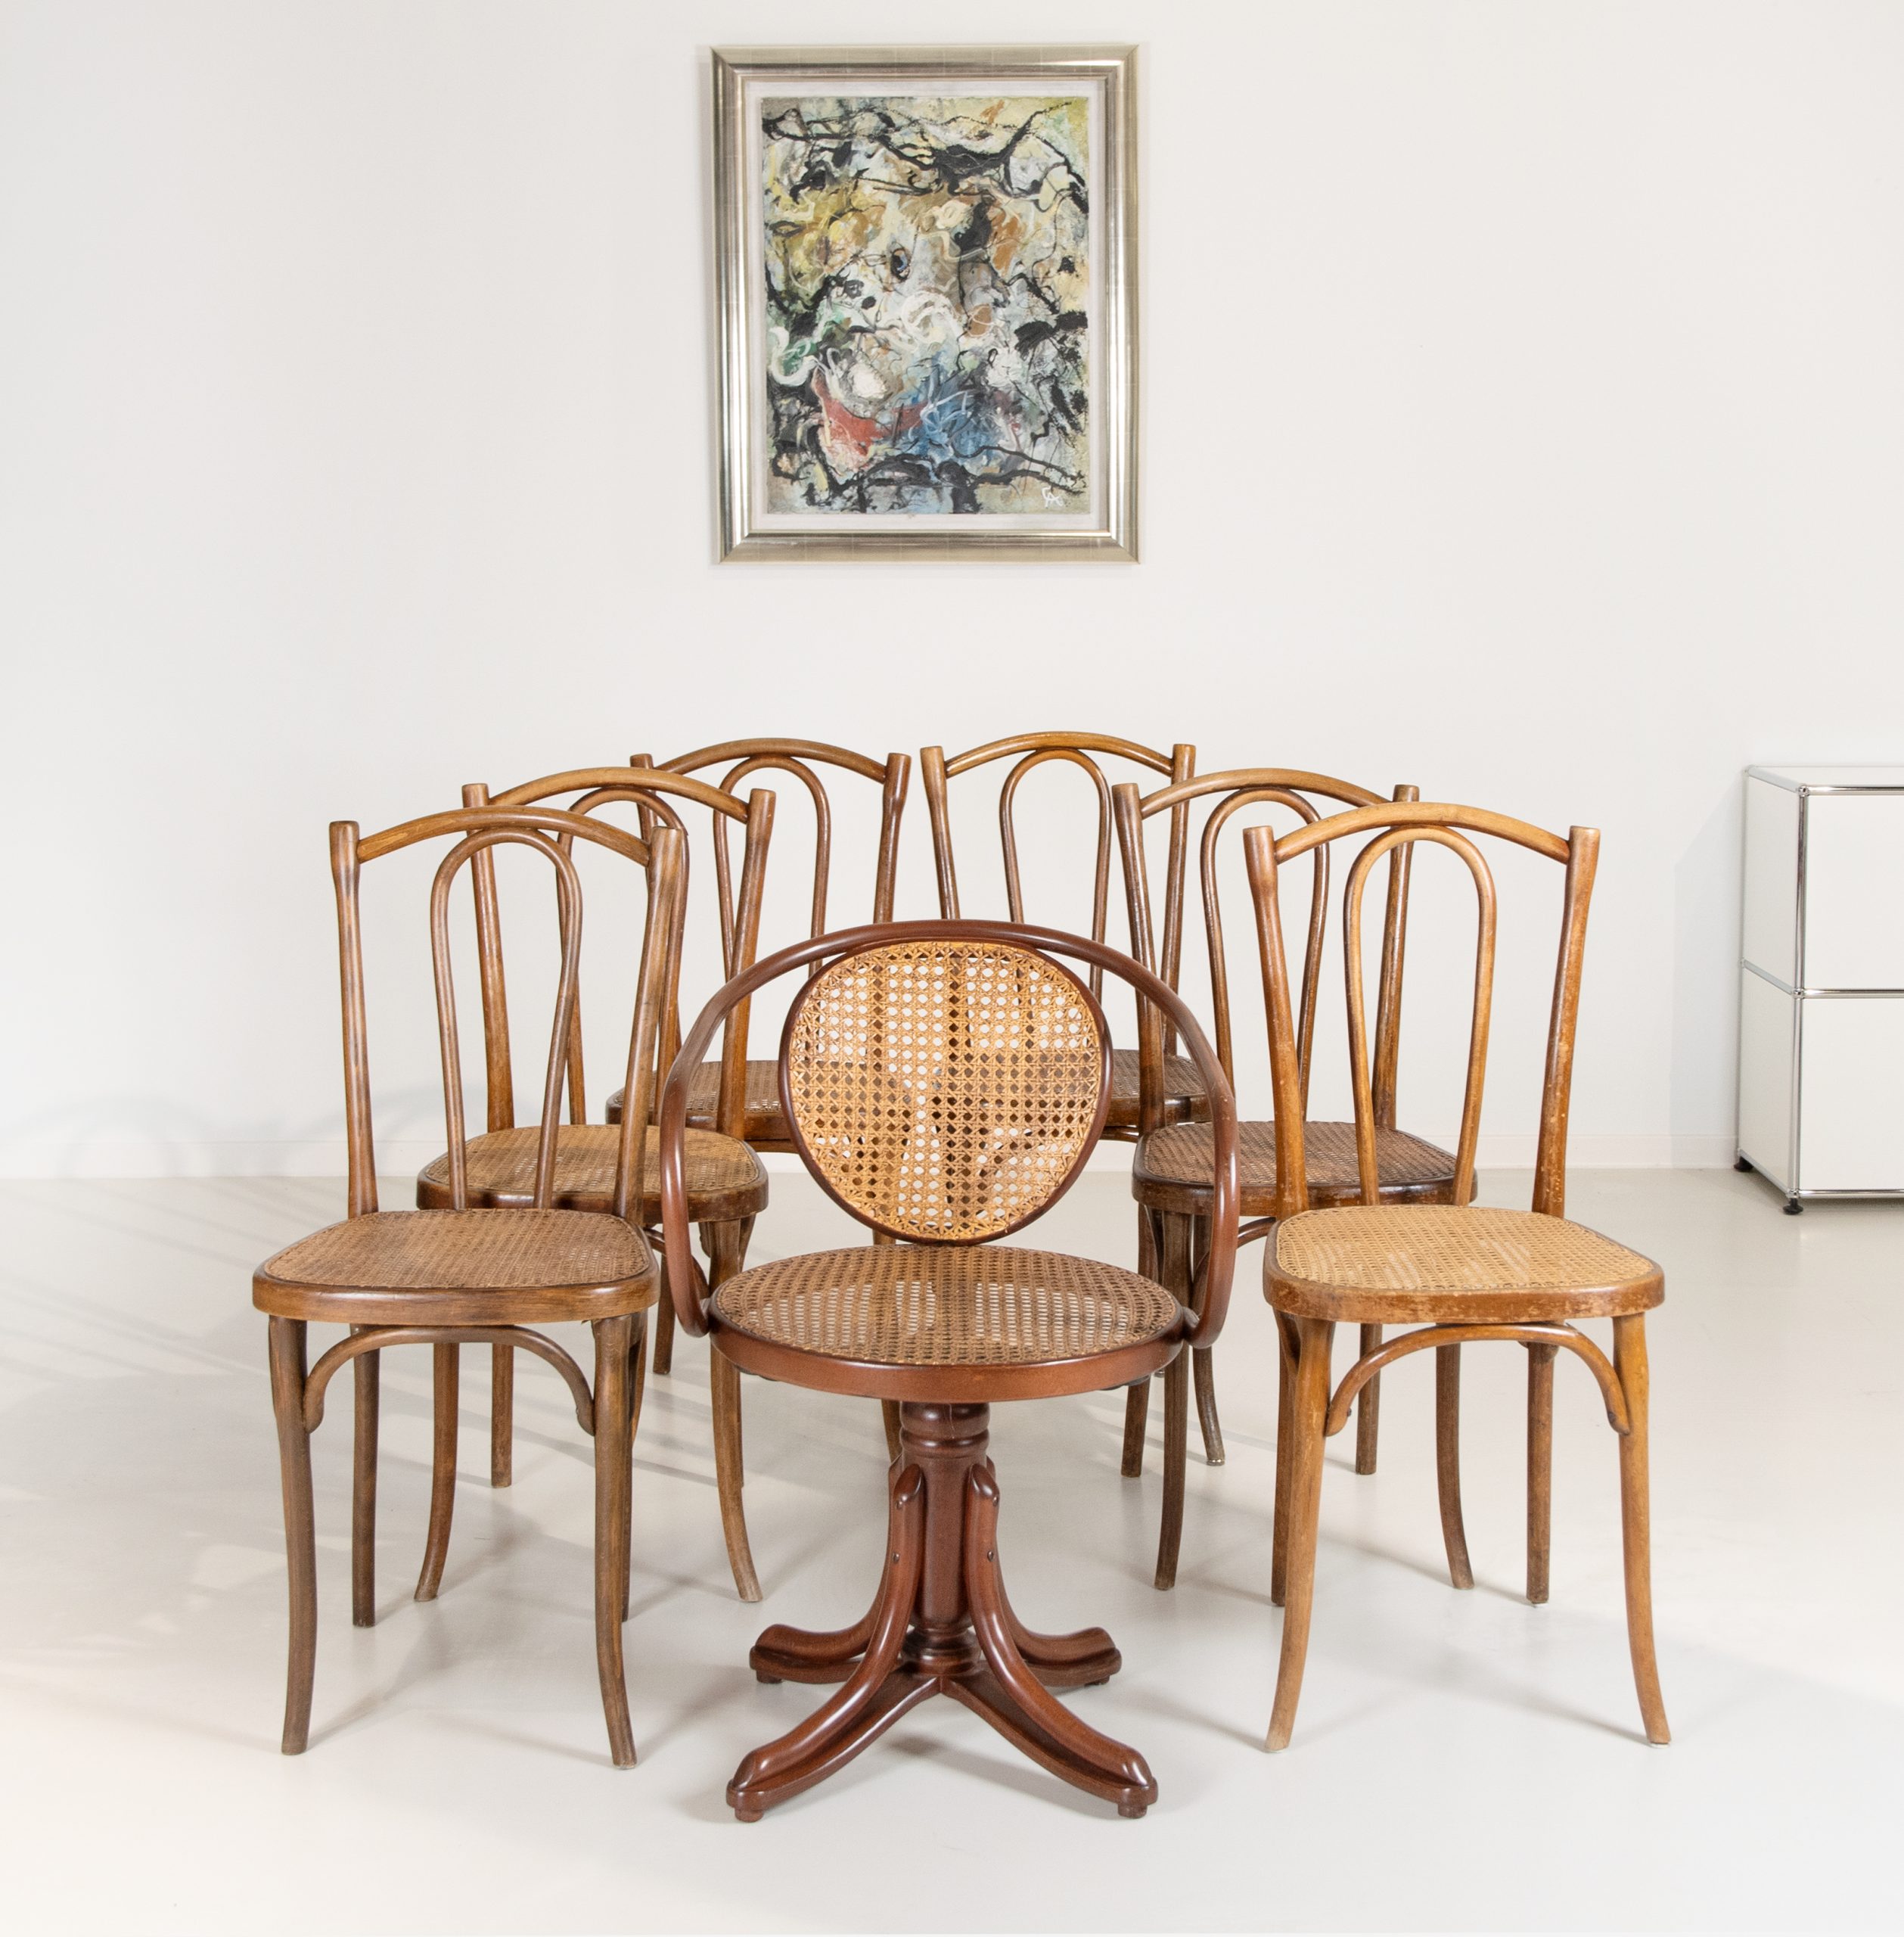 Sieben Stühle von Thonet - WETTMANN Kunstauktionen